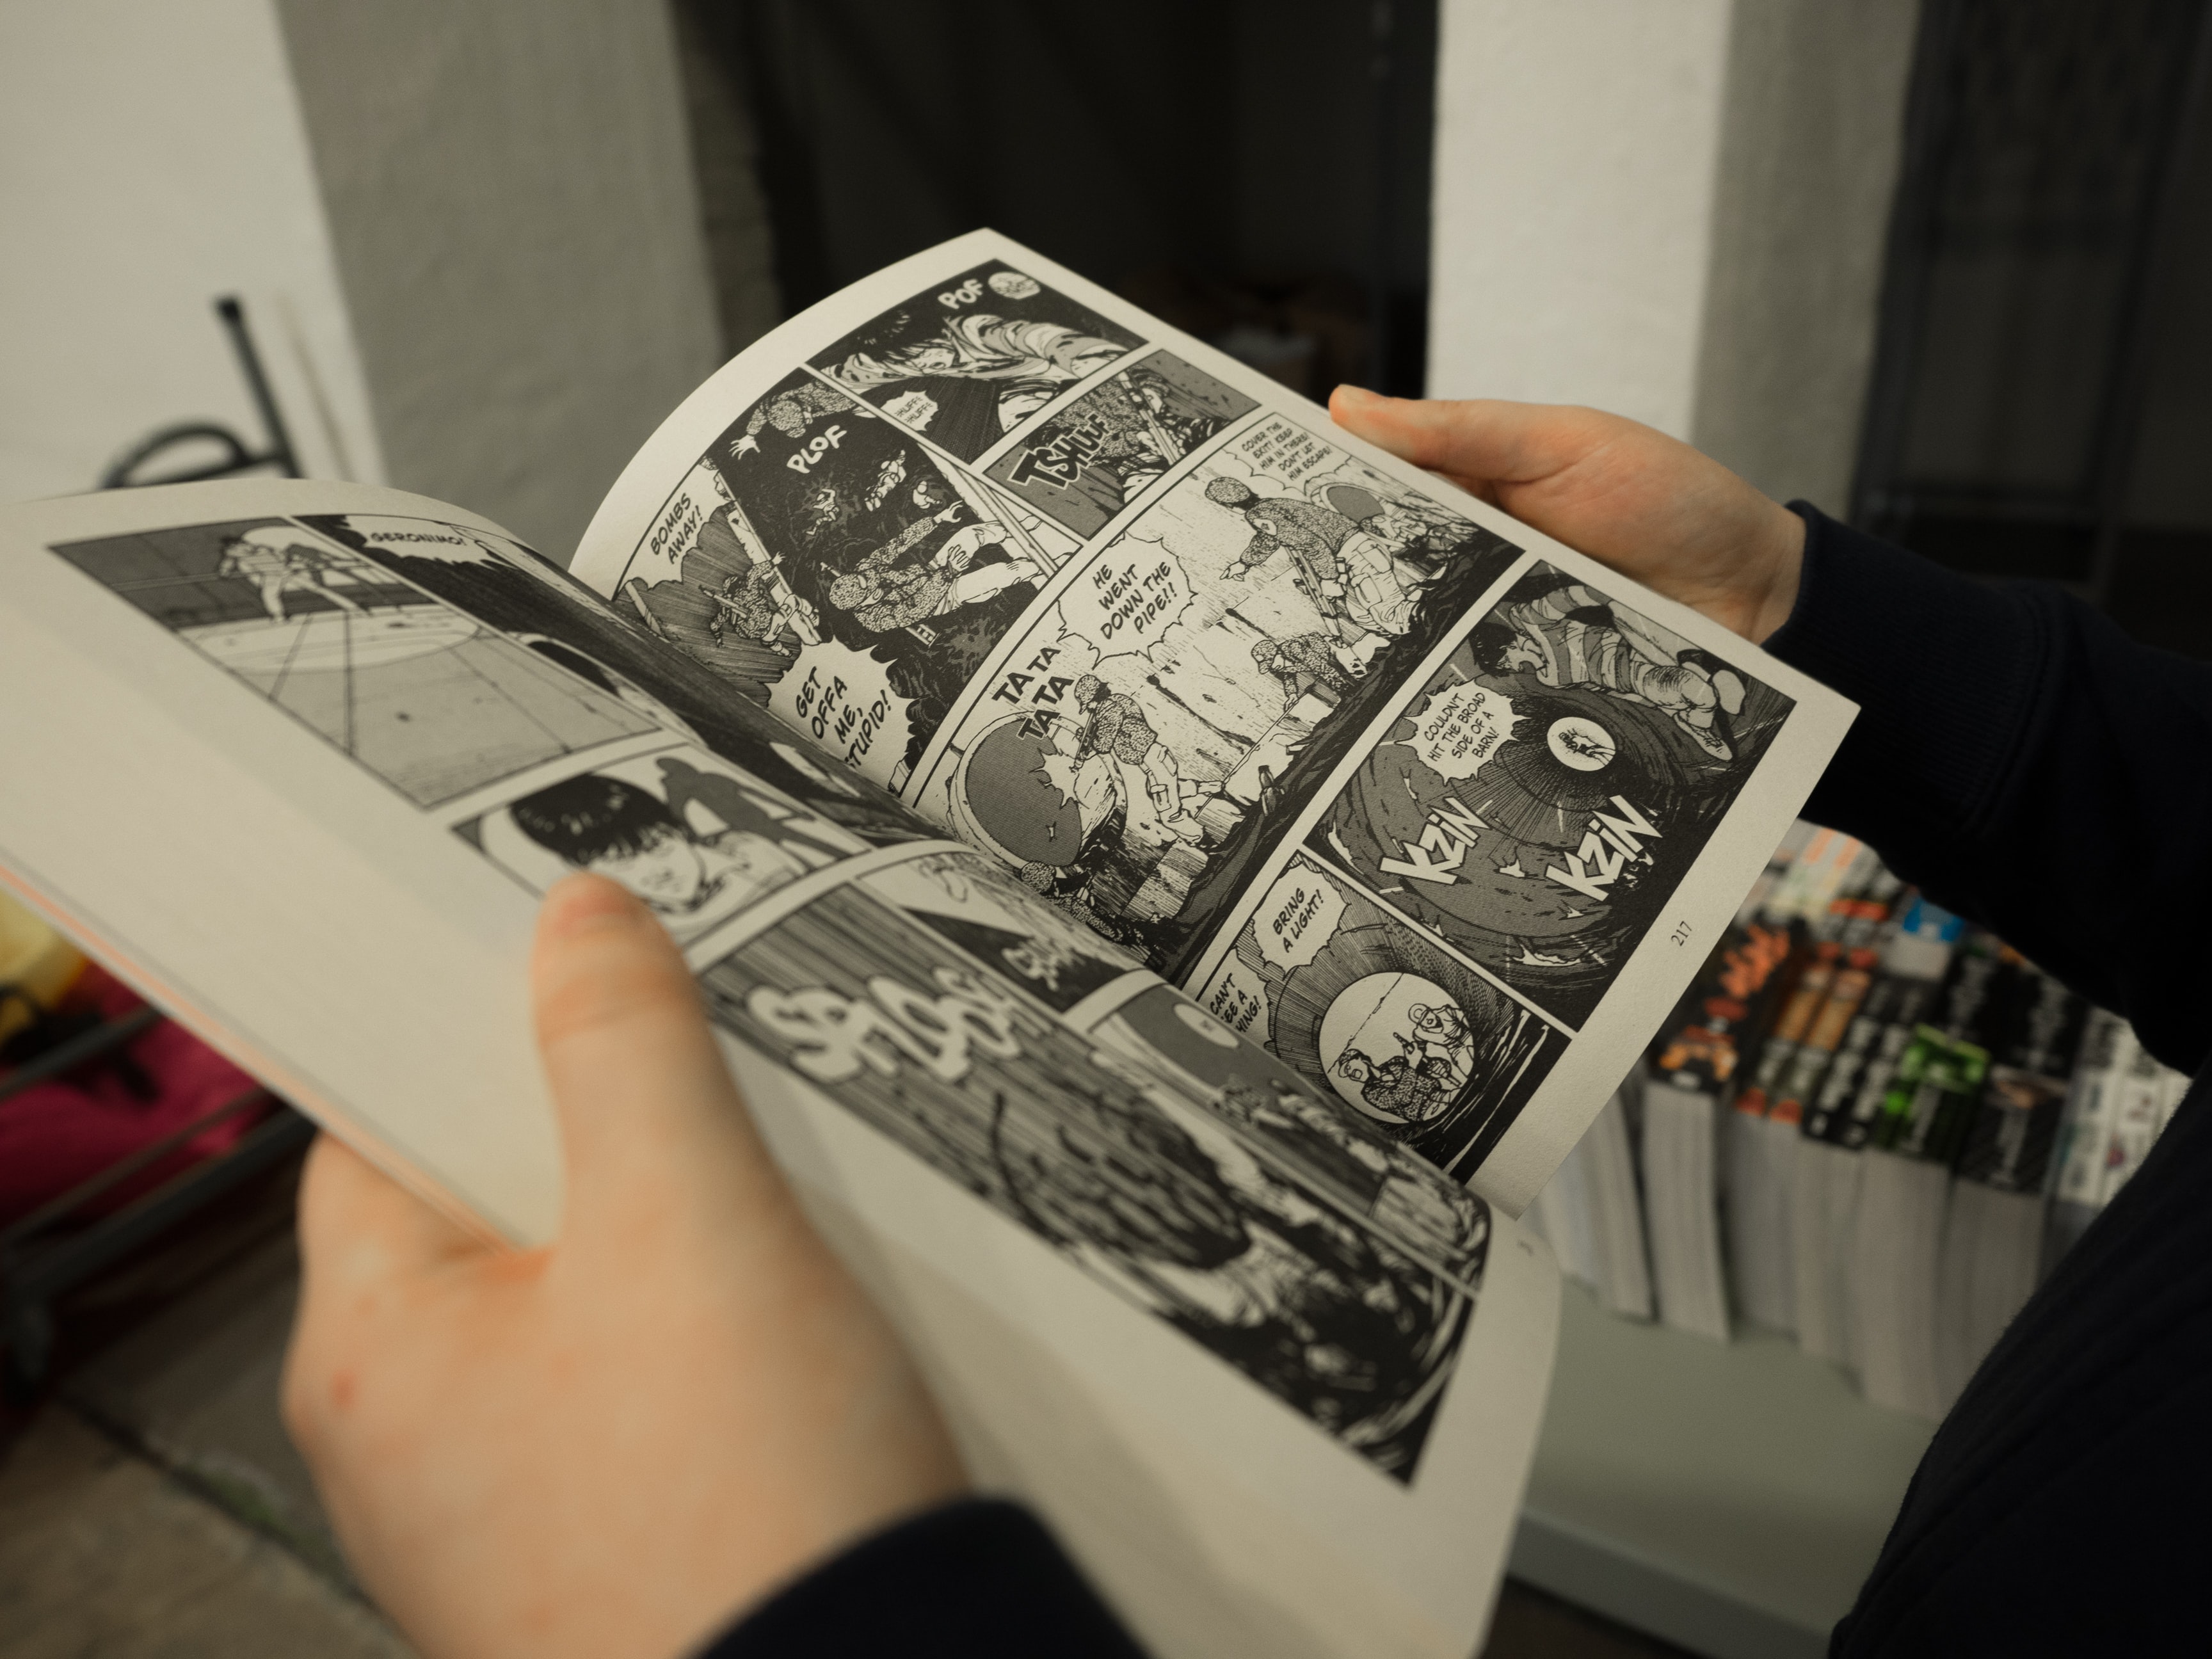 Jujutsu Kaisen Tome 1 Gagnez du temps avec l'abonnement manga